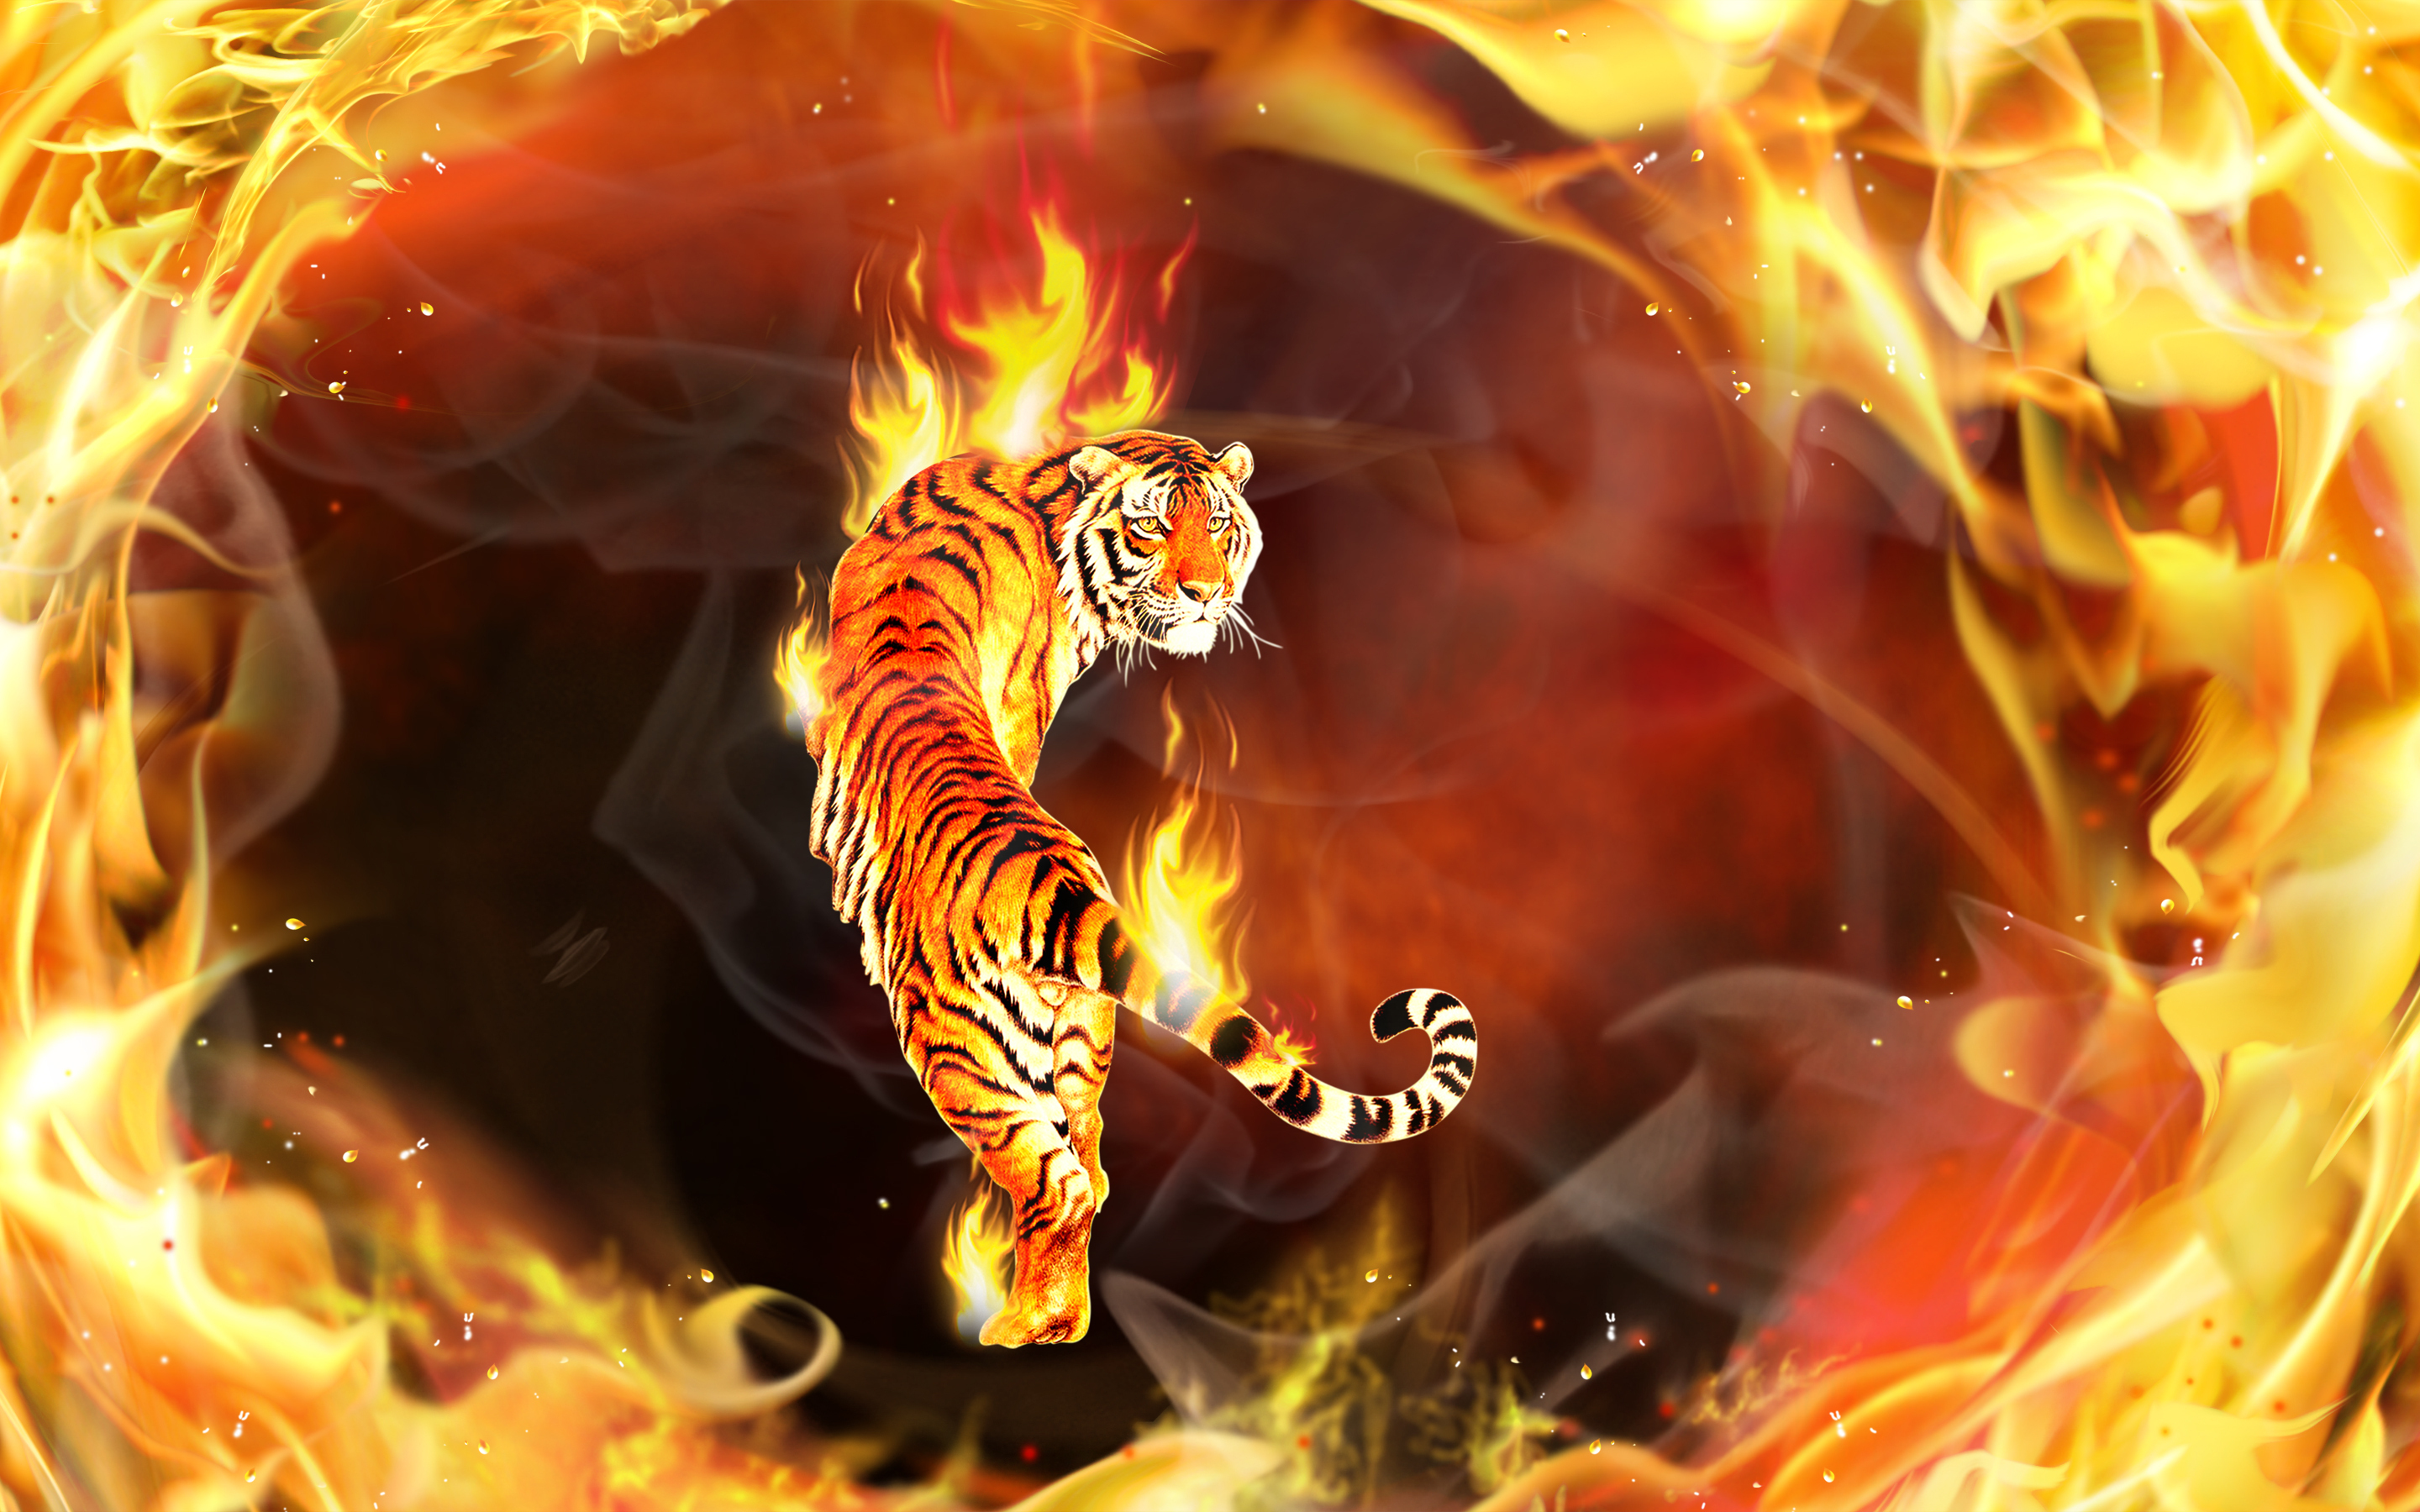 火の壁紙3d,火炎,熱,火,神話,架空の人物